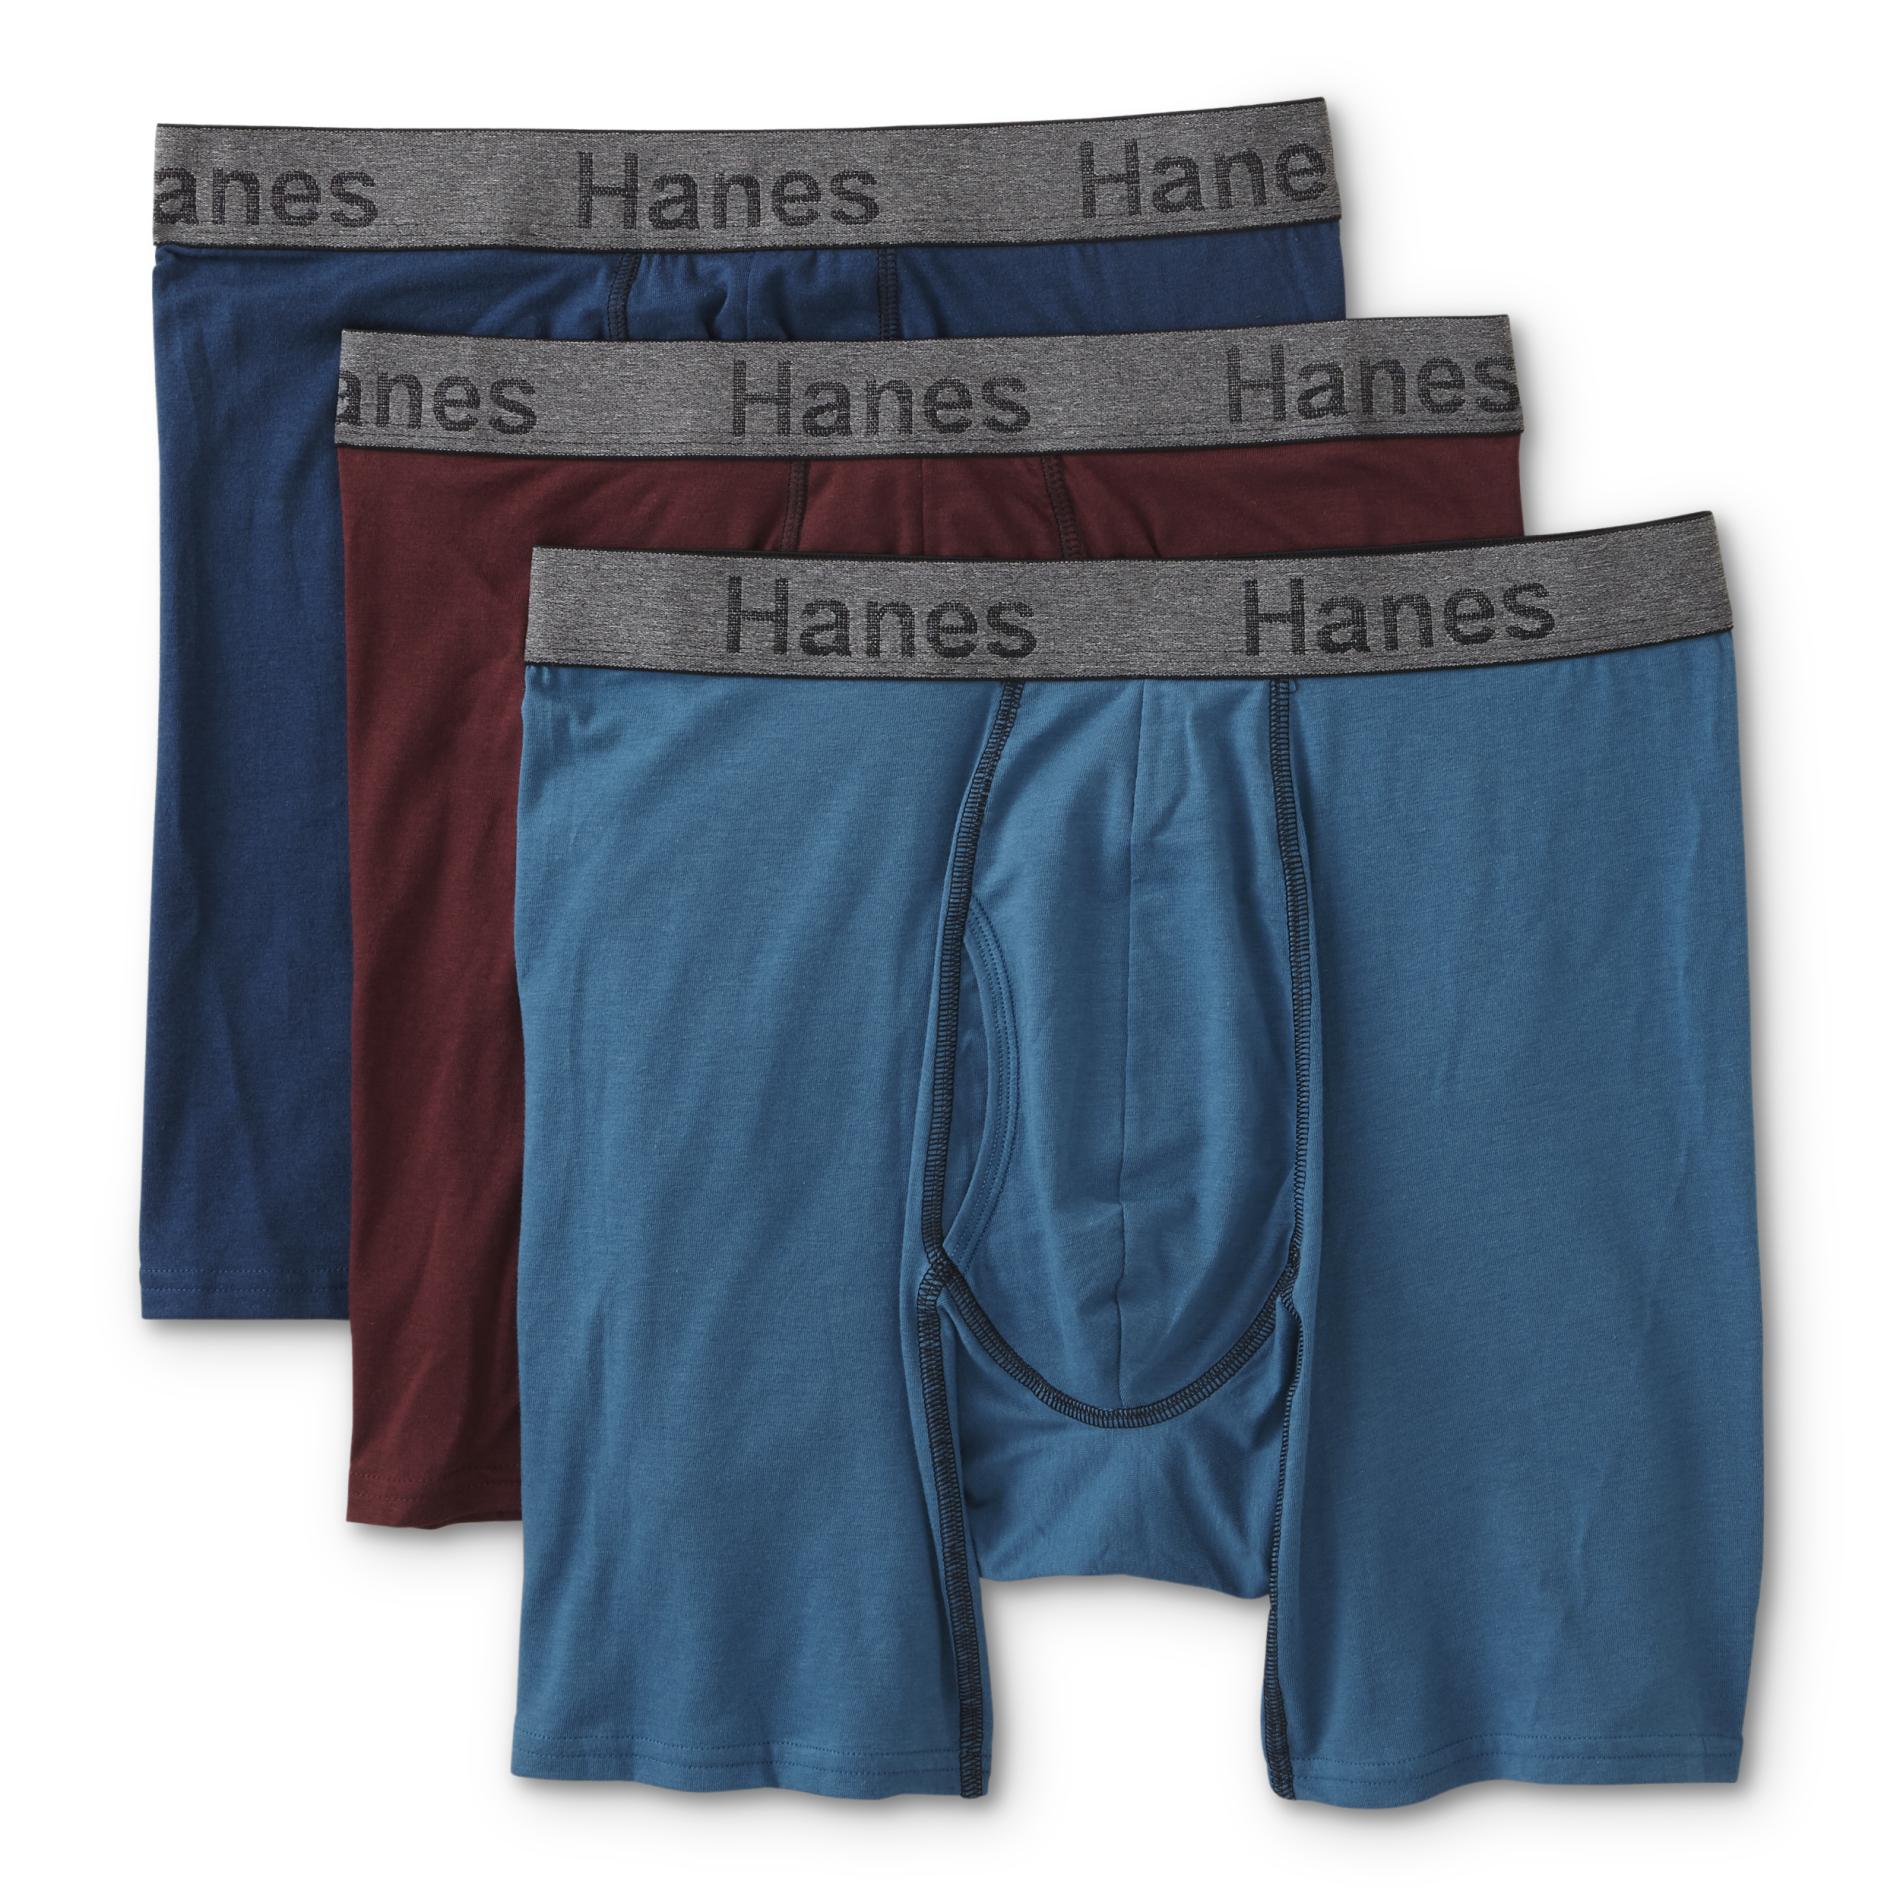 Hanes Men's 3-Pack Comfort Flex Fit Boxer Briefs - Assorted Colors